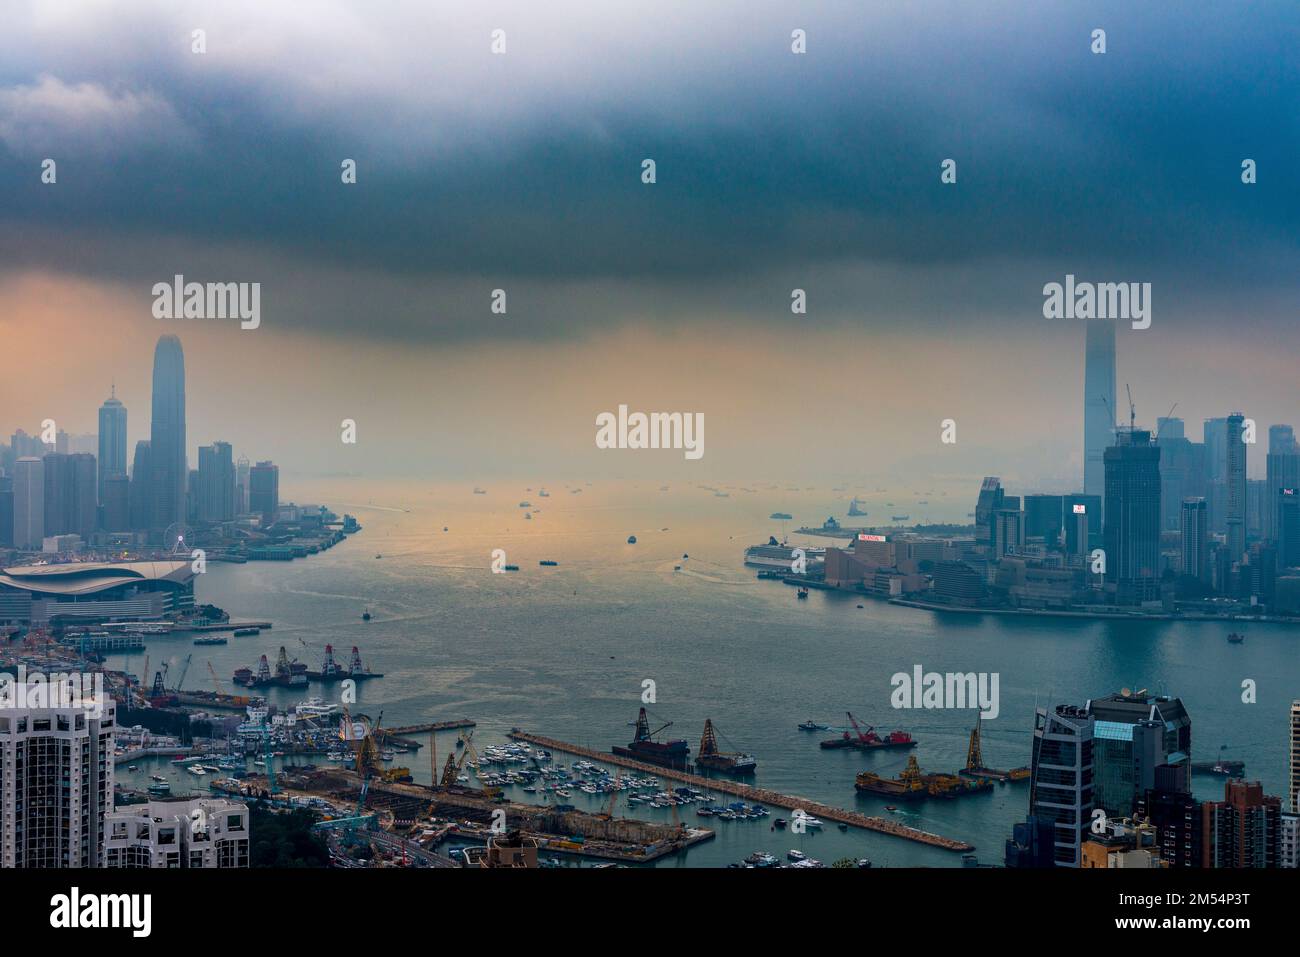 Une tempête imminente se combine au smog pour envelopper les gratte-ciel de Hong Kong, 2016 Banque D'Images